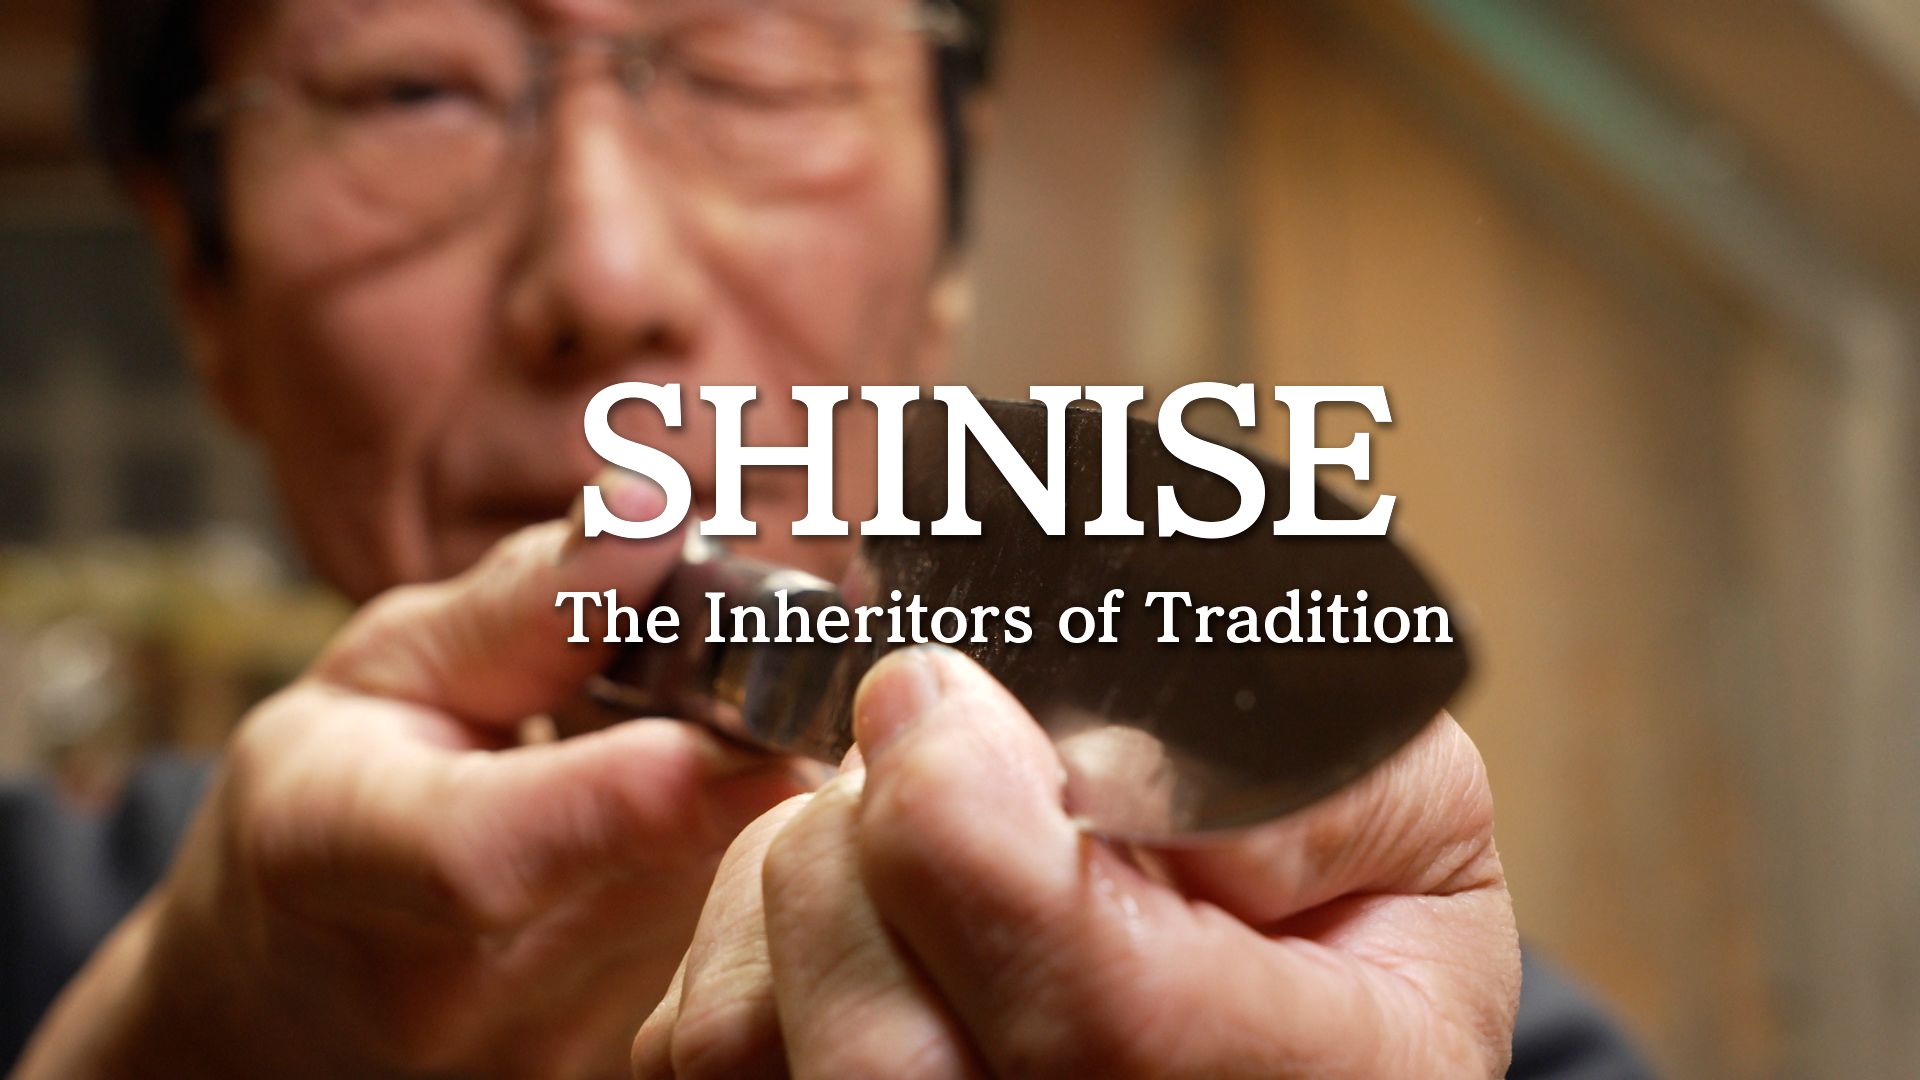 【プレスリリース】第76回カンヌ国際映画祭出品動画「SHINISE」公開のお知らせ